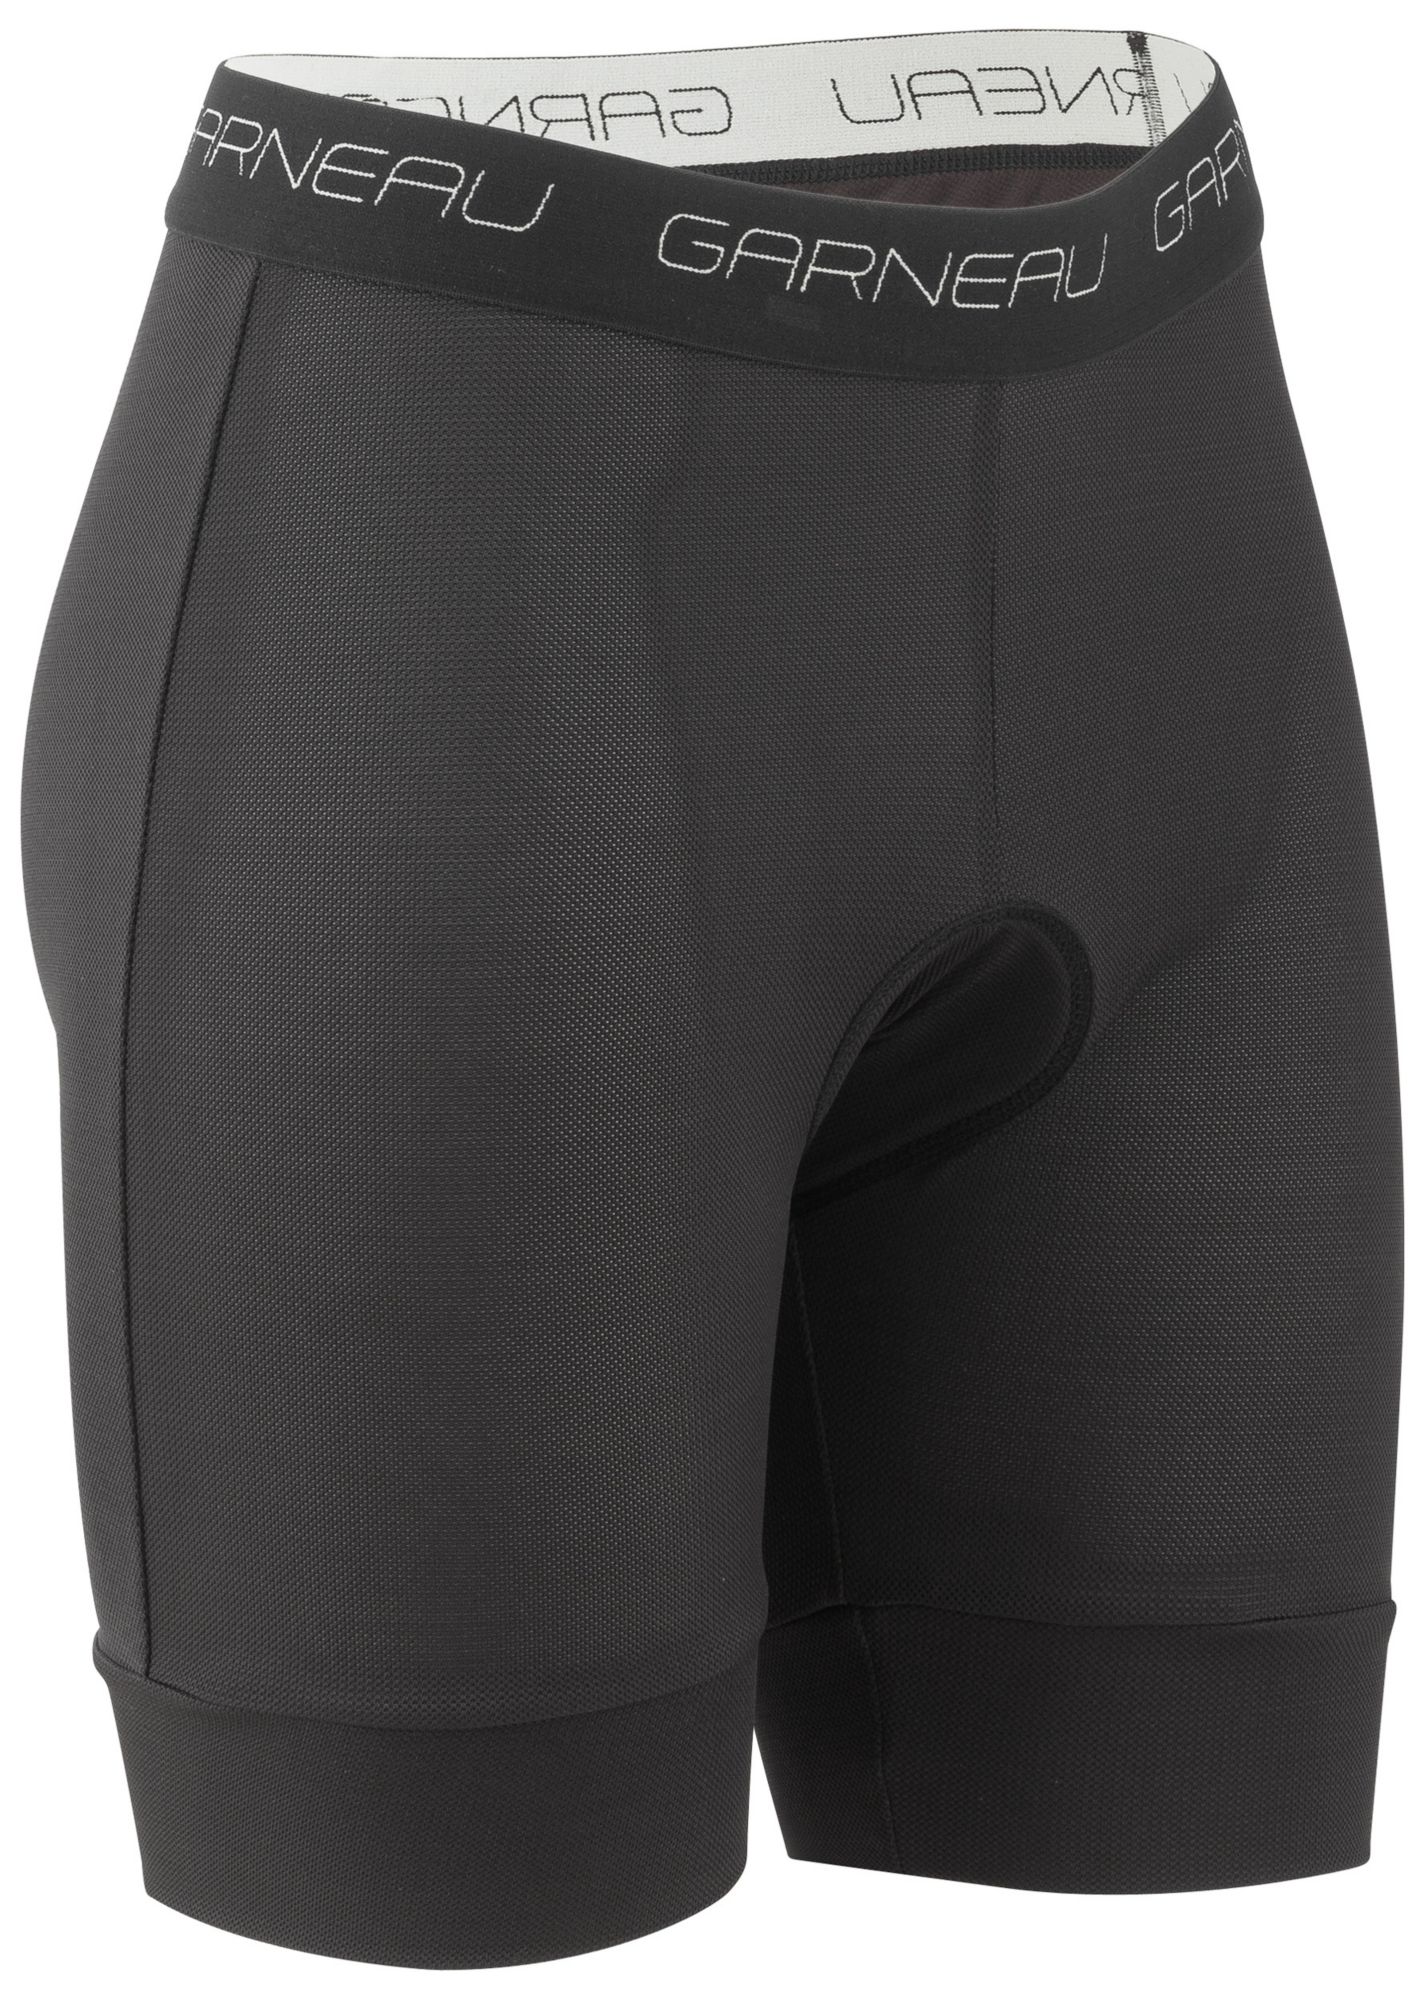 louis garneau men's gel cycling shorts